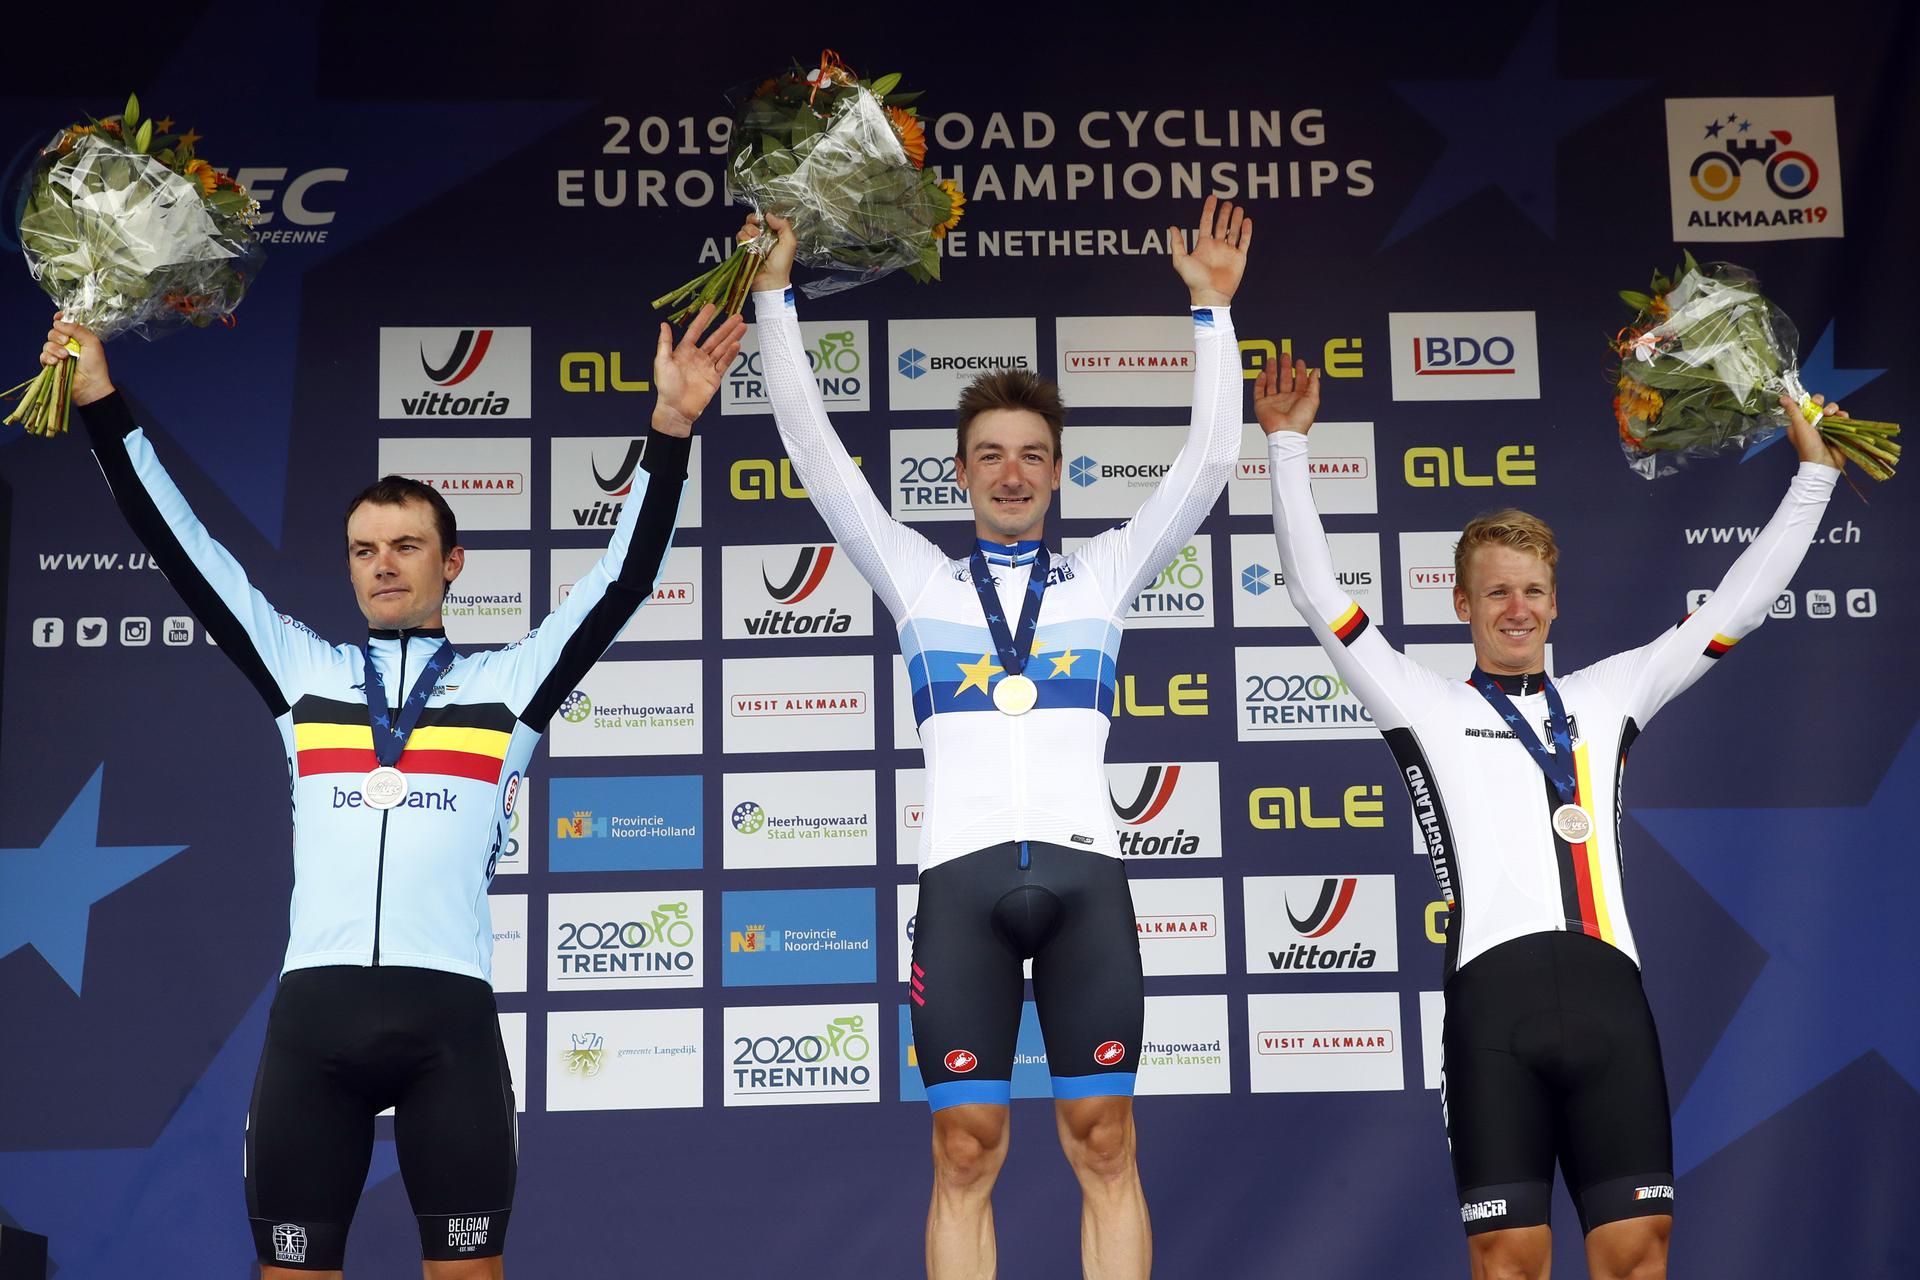 Europamesterskaber i cykling udsat til næste år